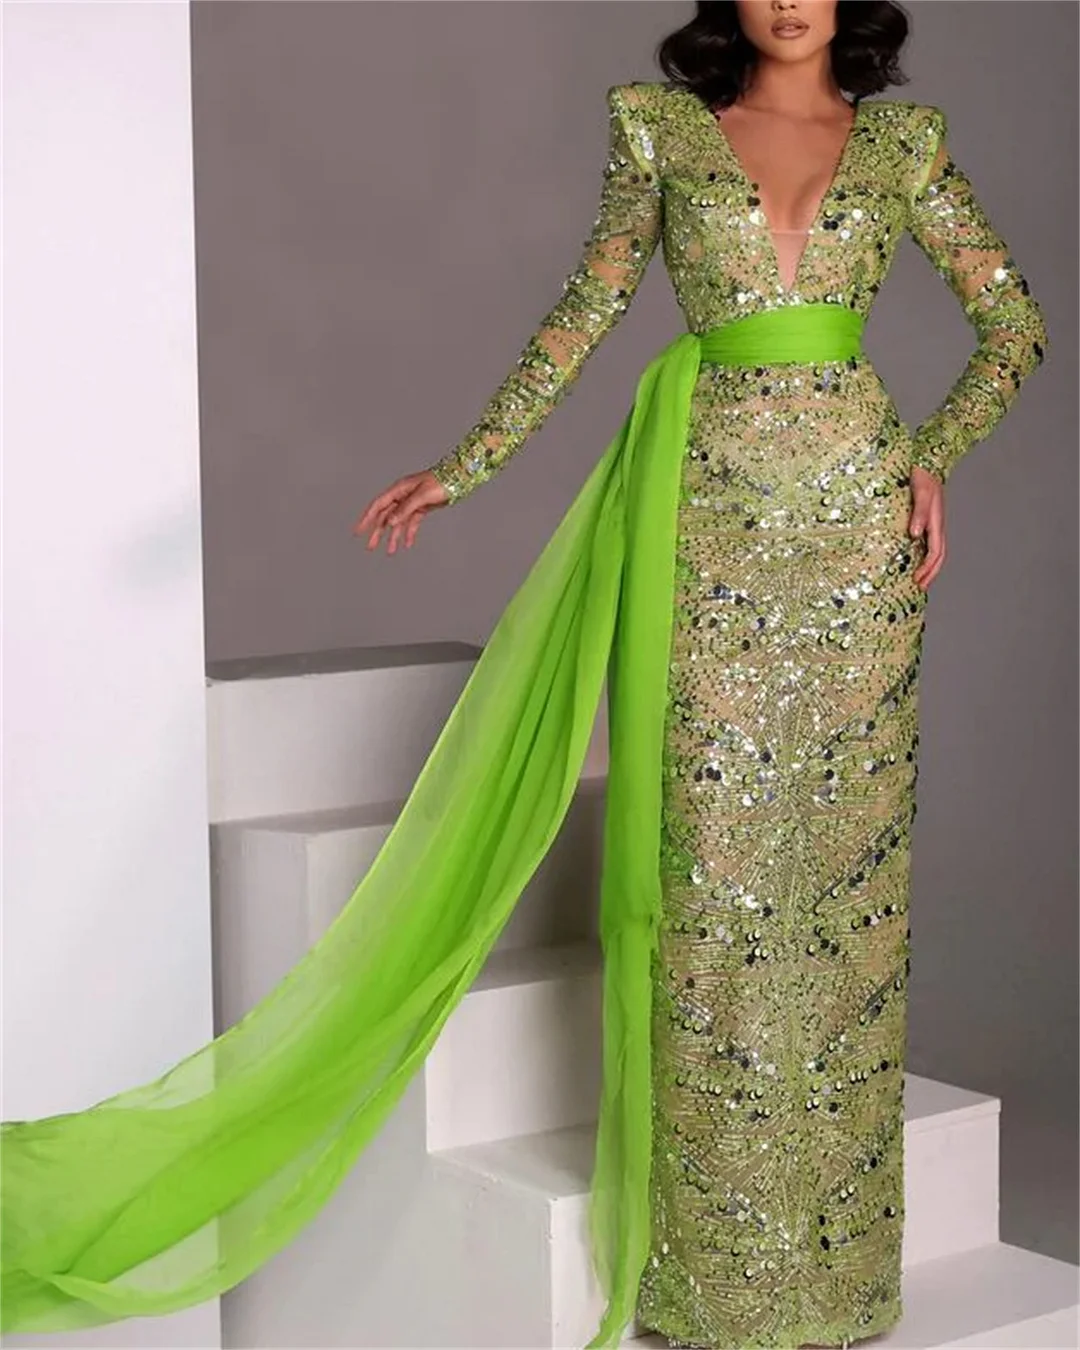 Women's Green Long Sleeve Sequin Dress